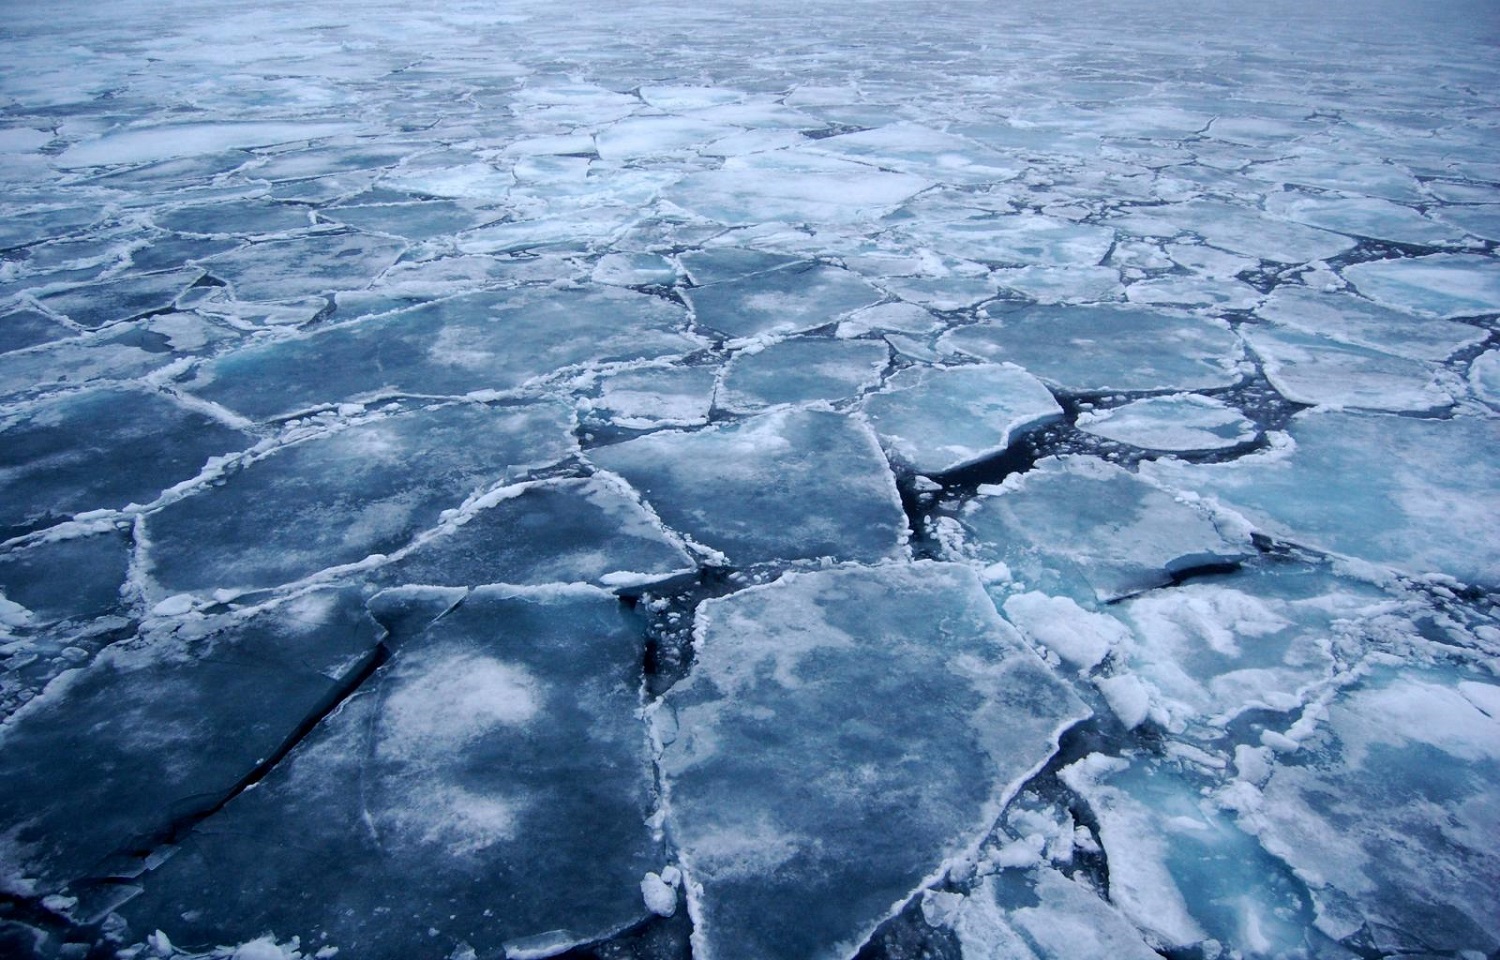 كيف-يتشكل-جليد-البحر-من-مياه-عذبة-بينما-المحيطات-مالحة؟